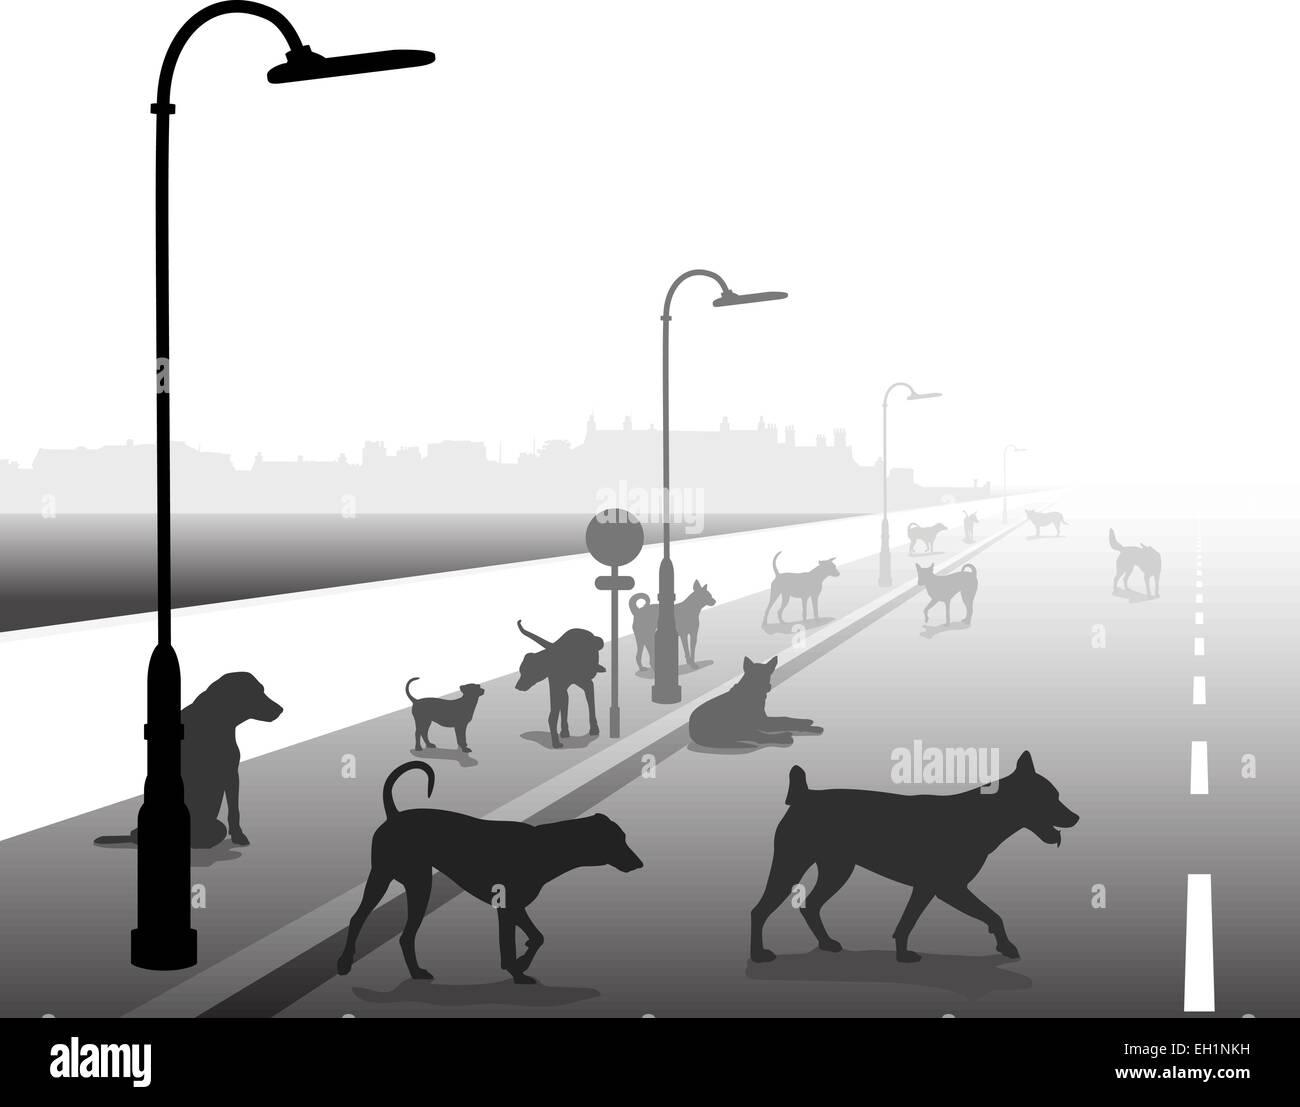 Modificabile illustrazione vettoriale di un variegato gruppo di cani randagi su una strada solitaria Illustrazione Vettoriale